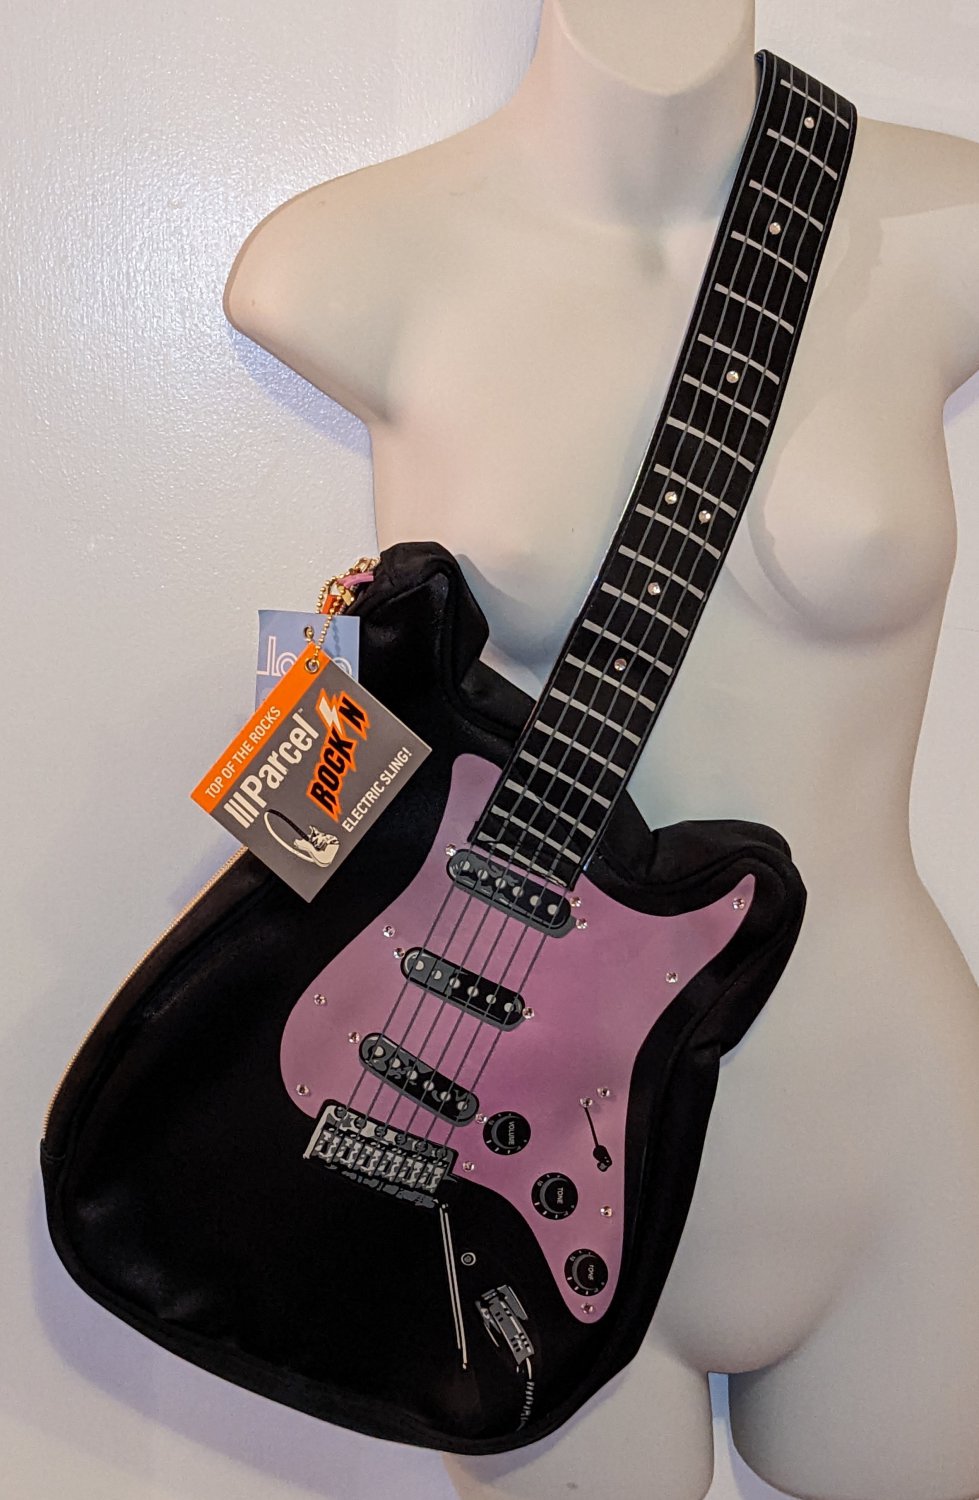 Parcel Rock'n Electric Sling Guitar Purse Crossbody Shoulder Bag Steve Madden Purple Black NWT